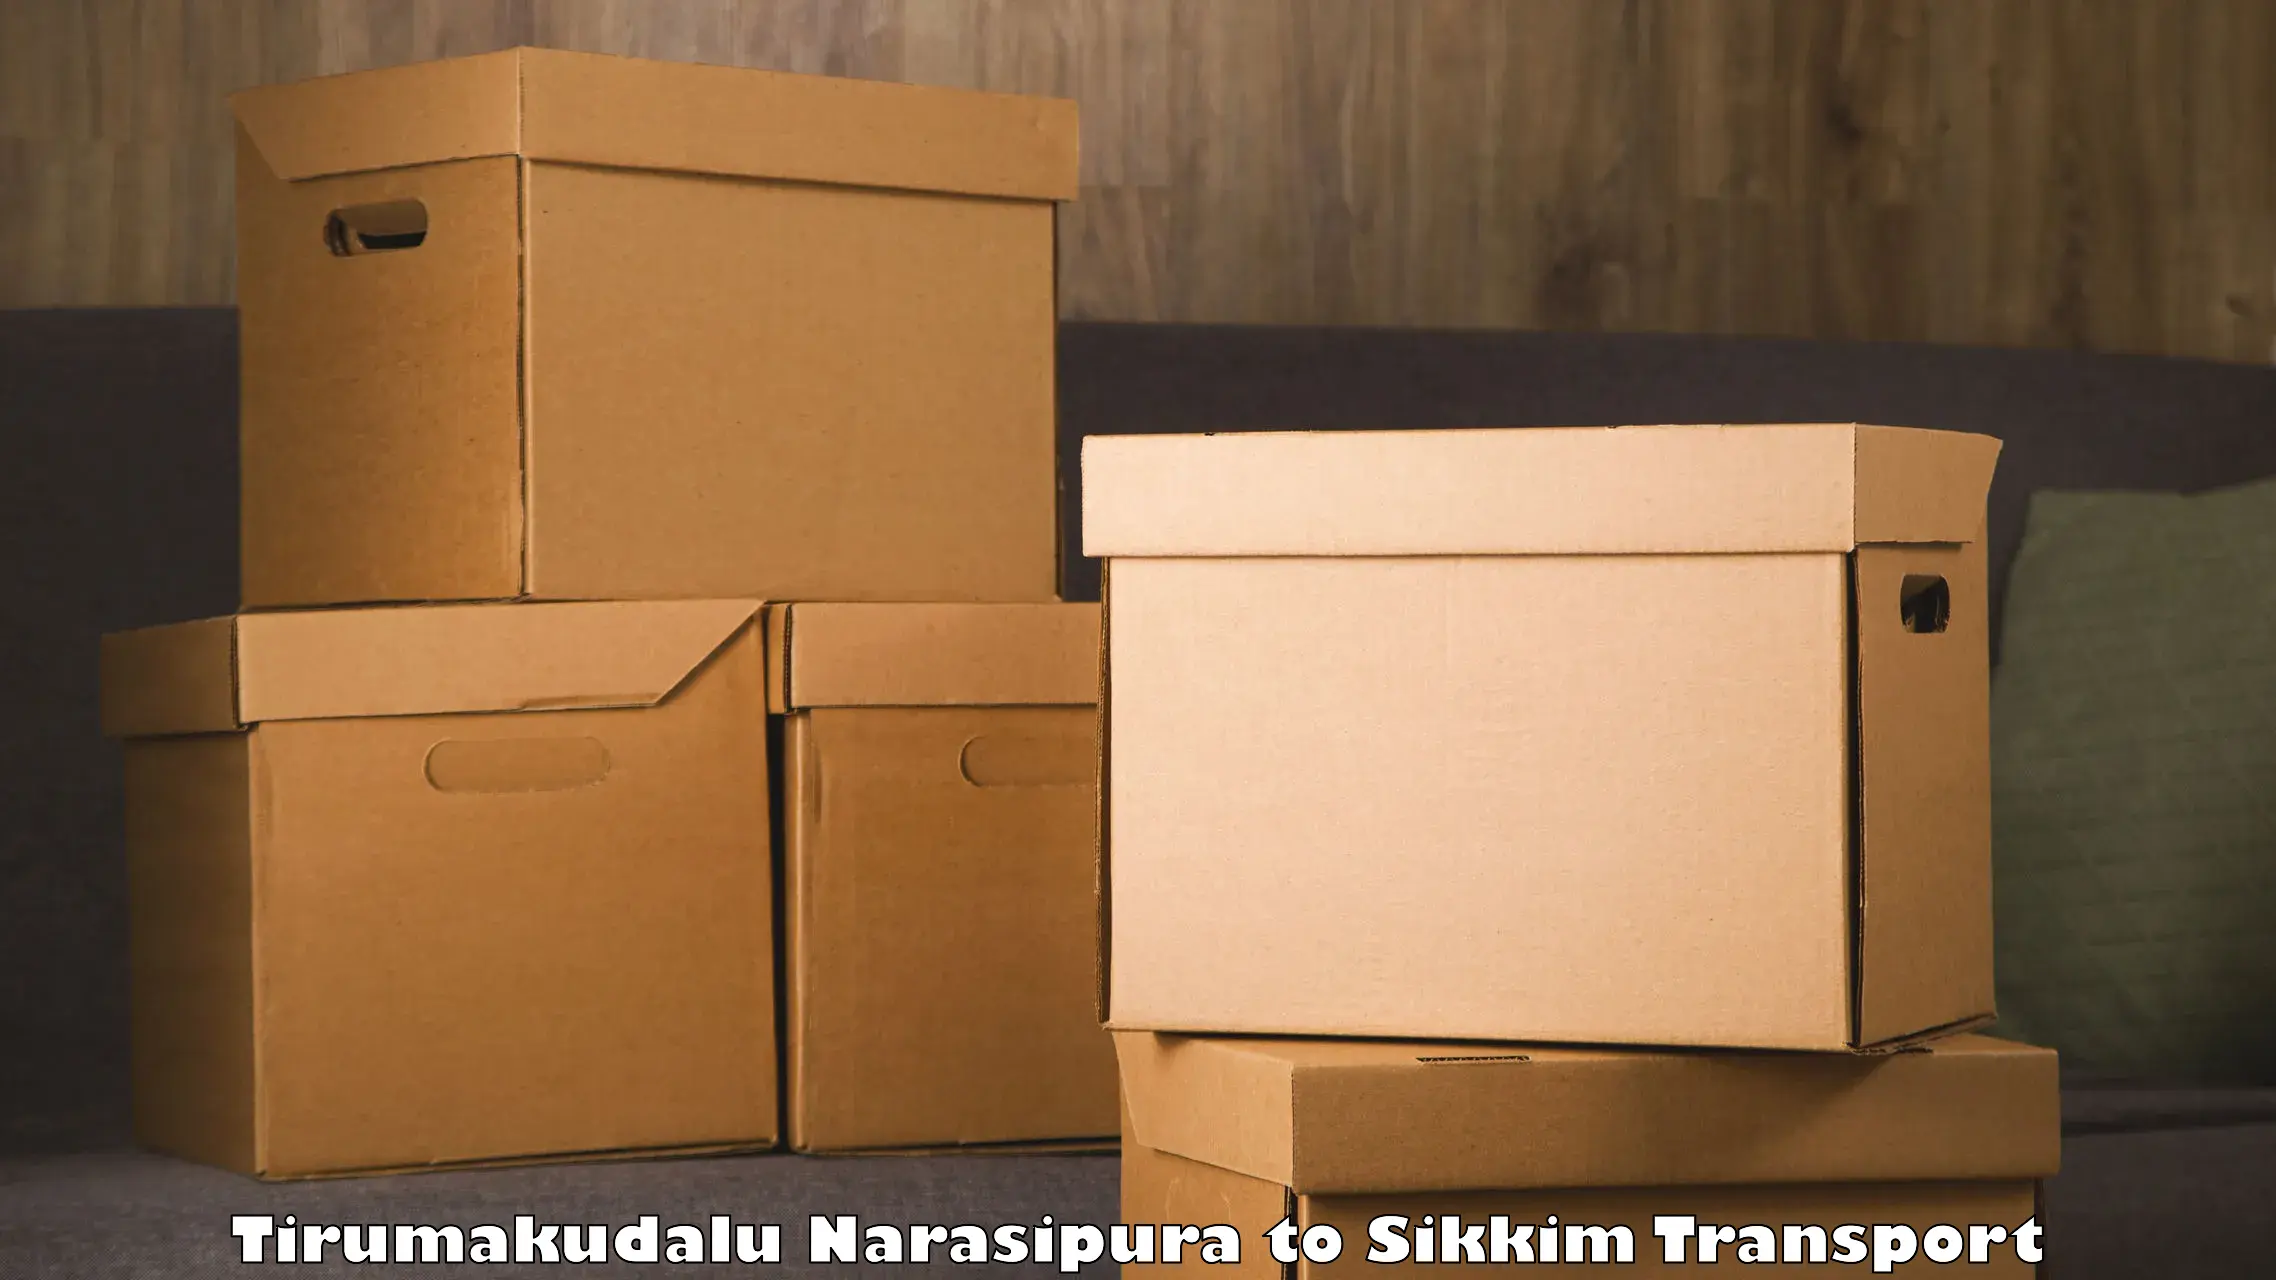 Furniture transport service Tirumakudalu Narasipura to Ravangla